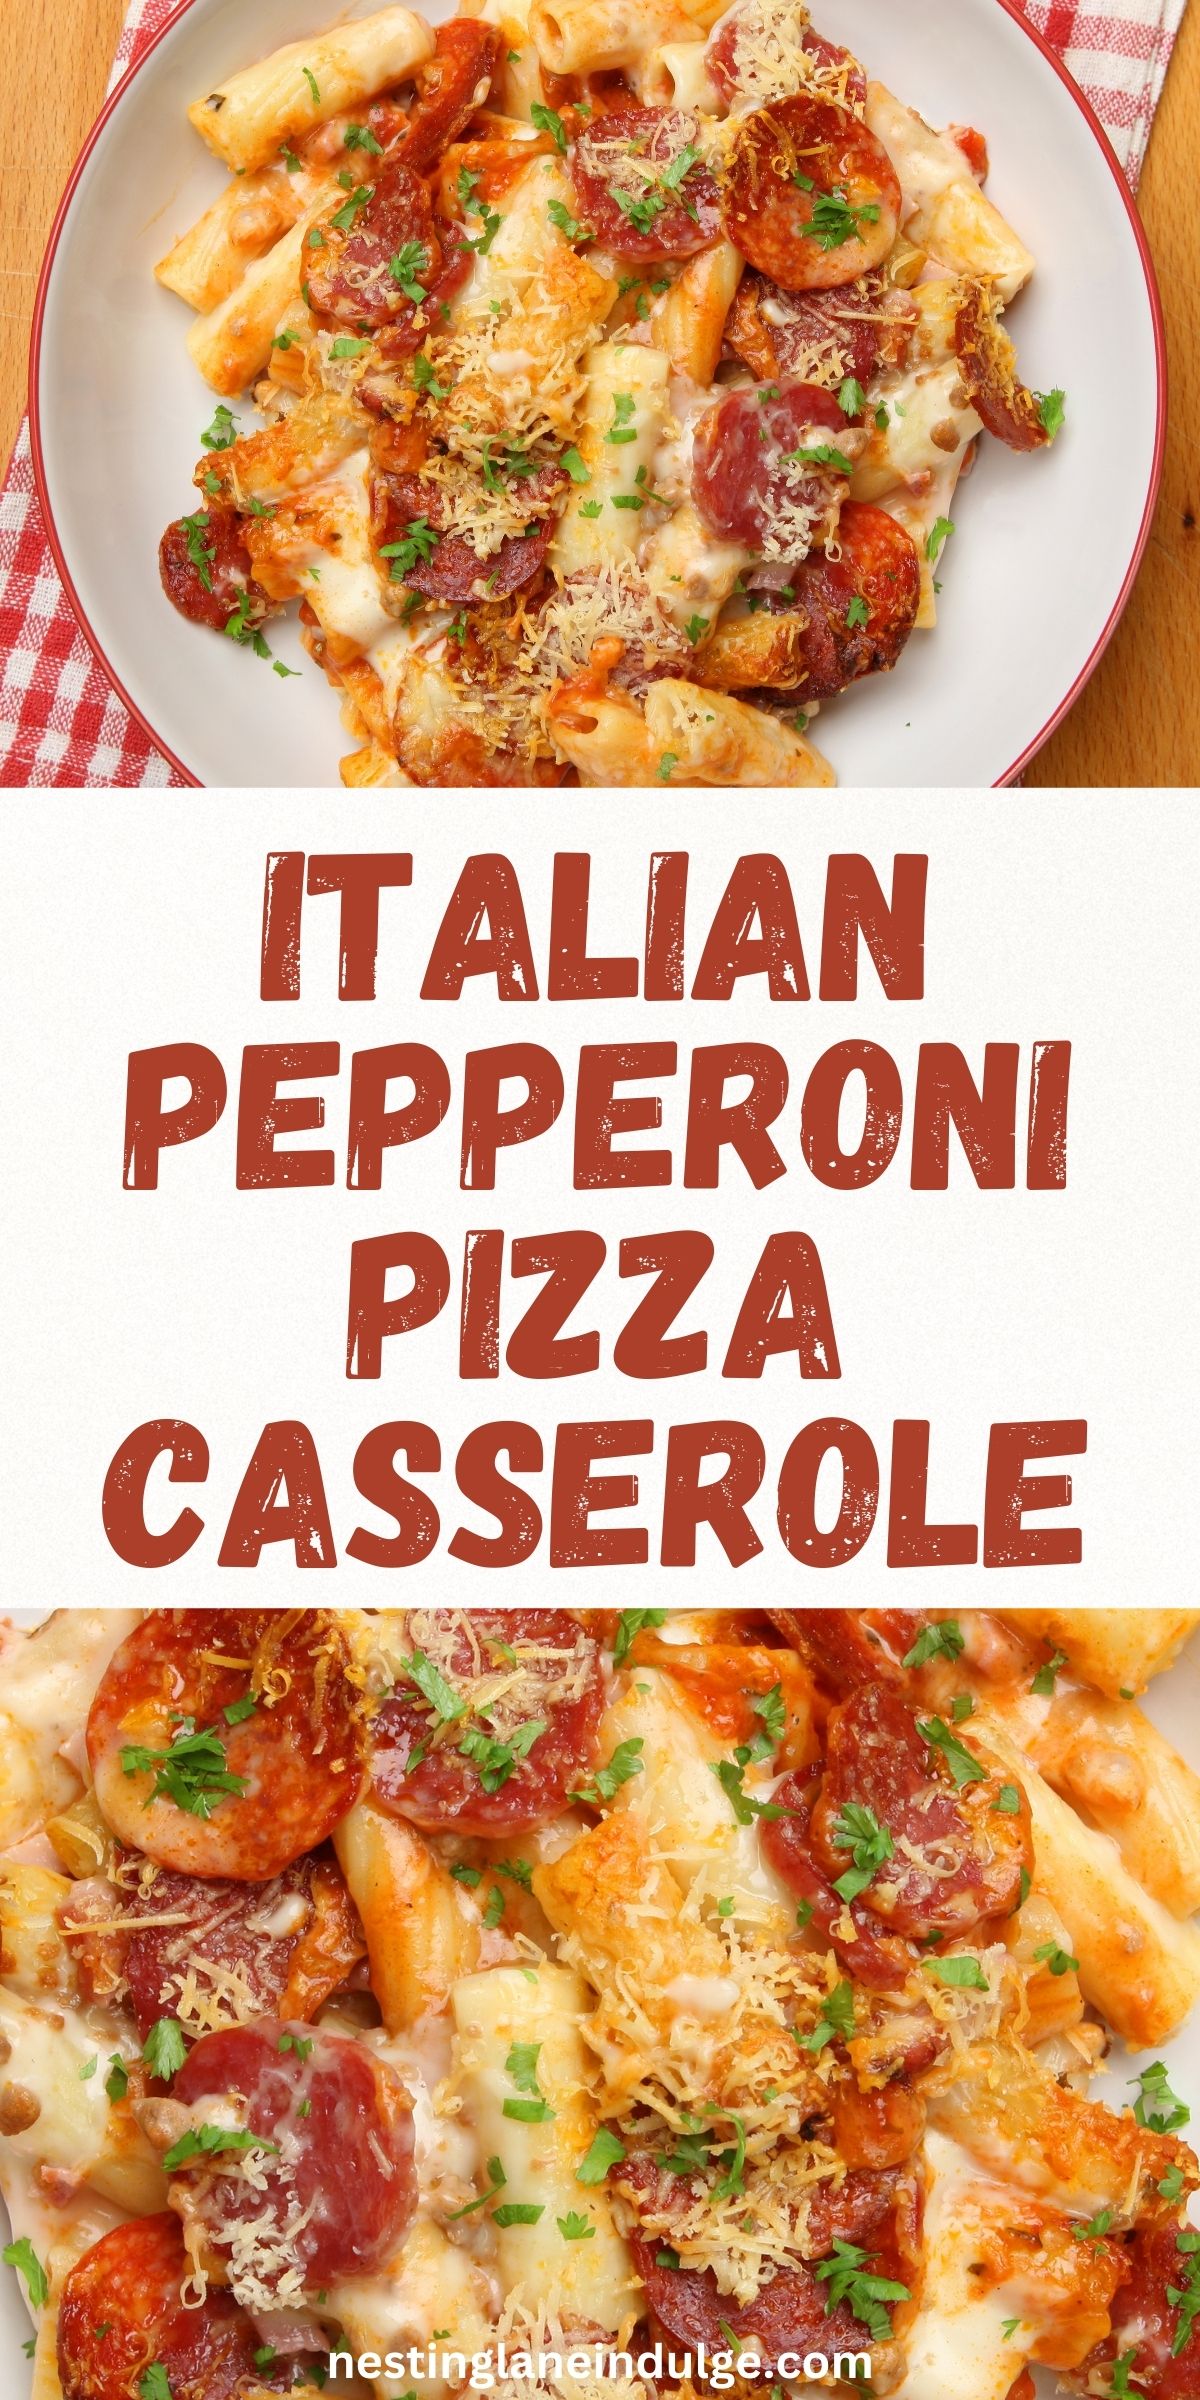 Italian Pepperoni Pizza Casserole Graphic.